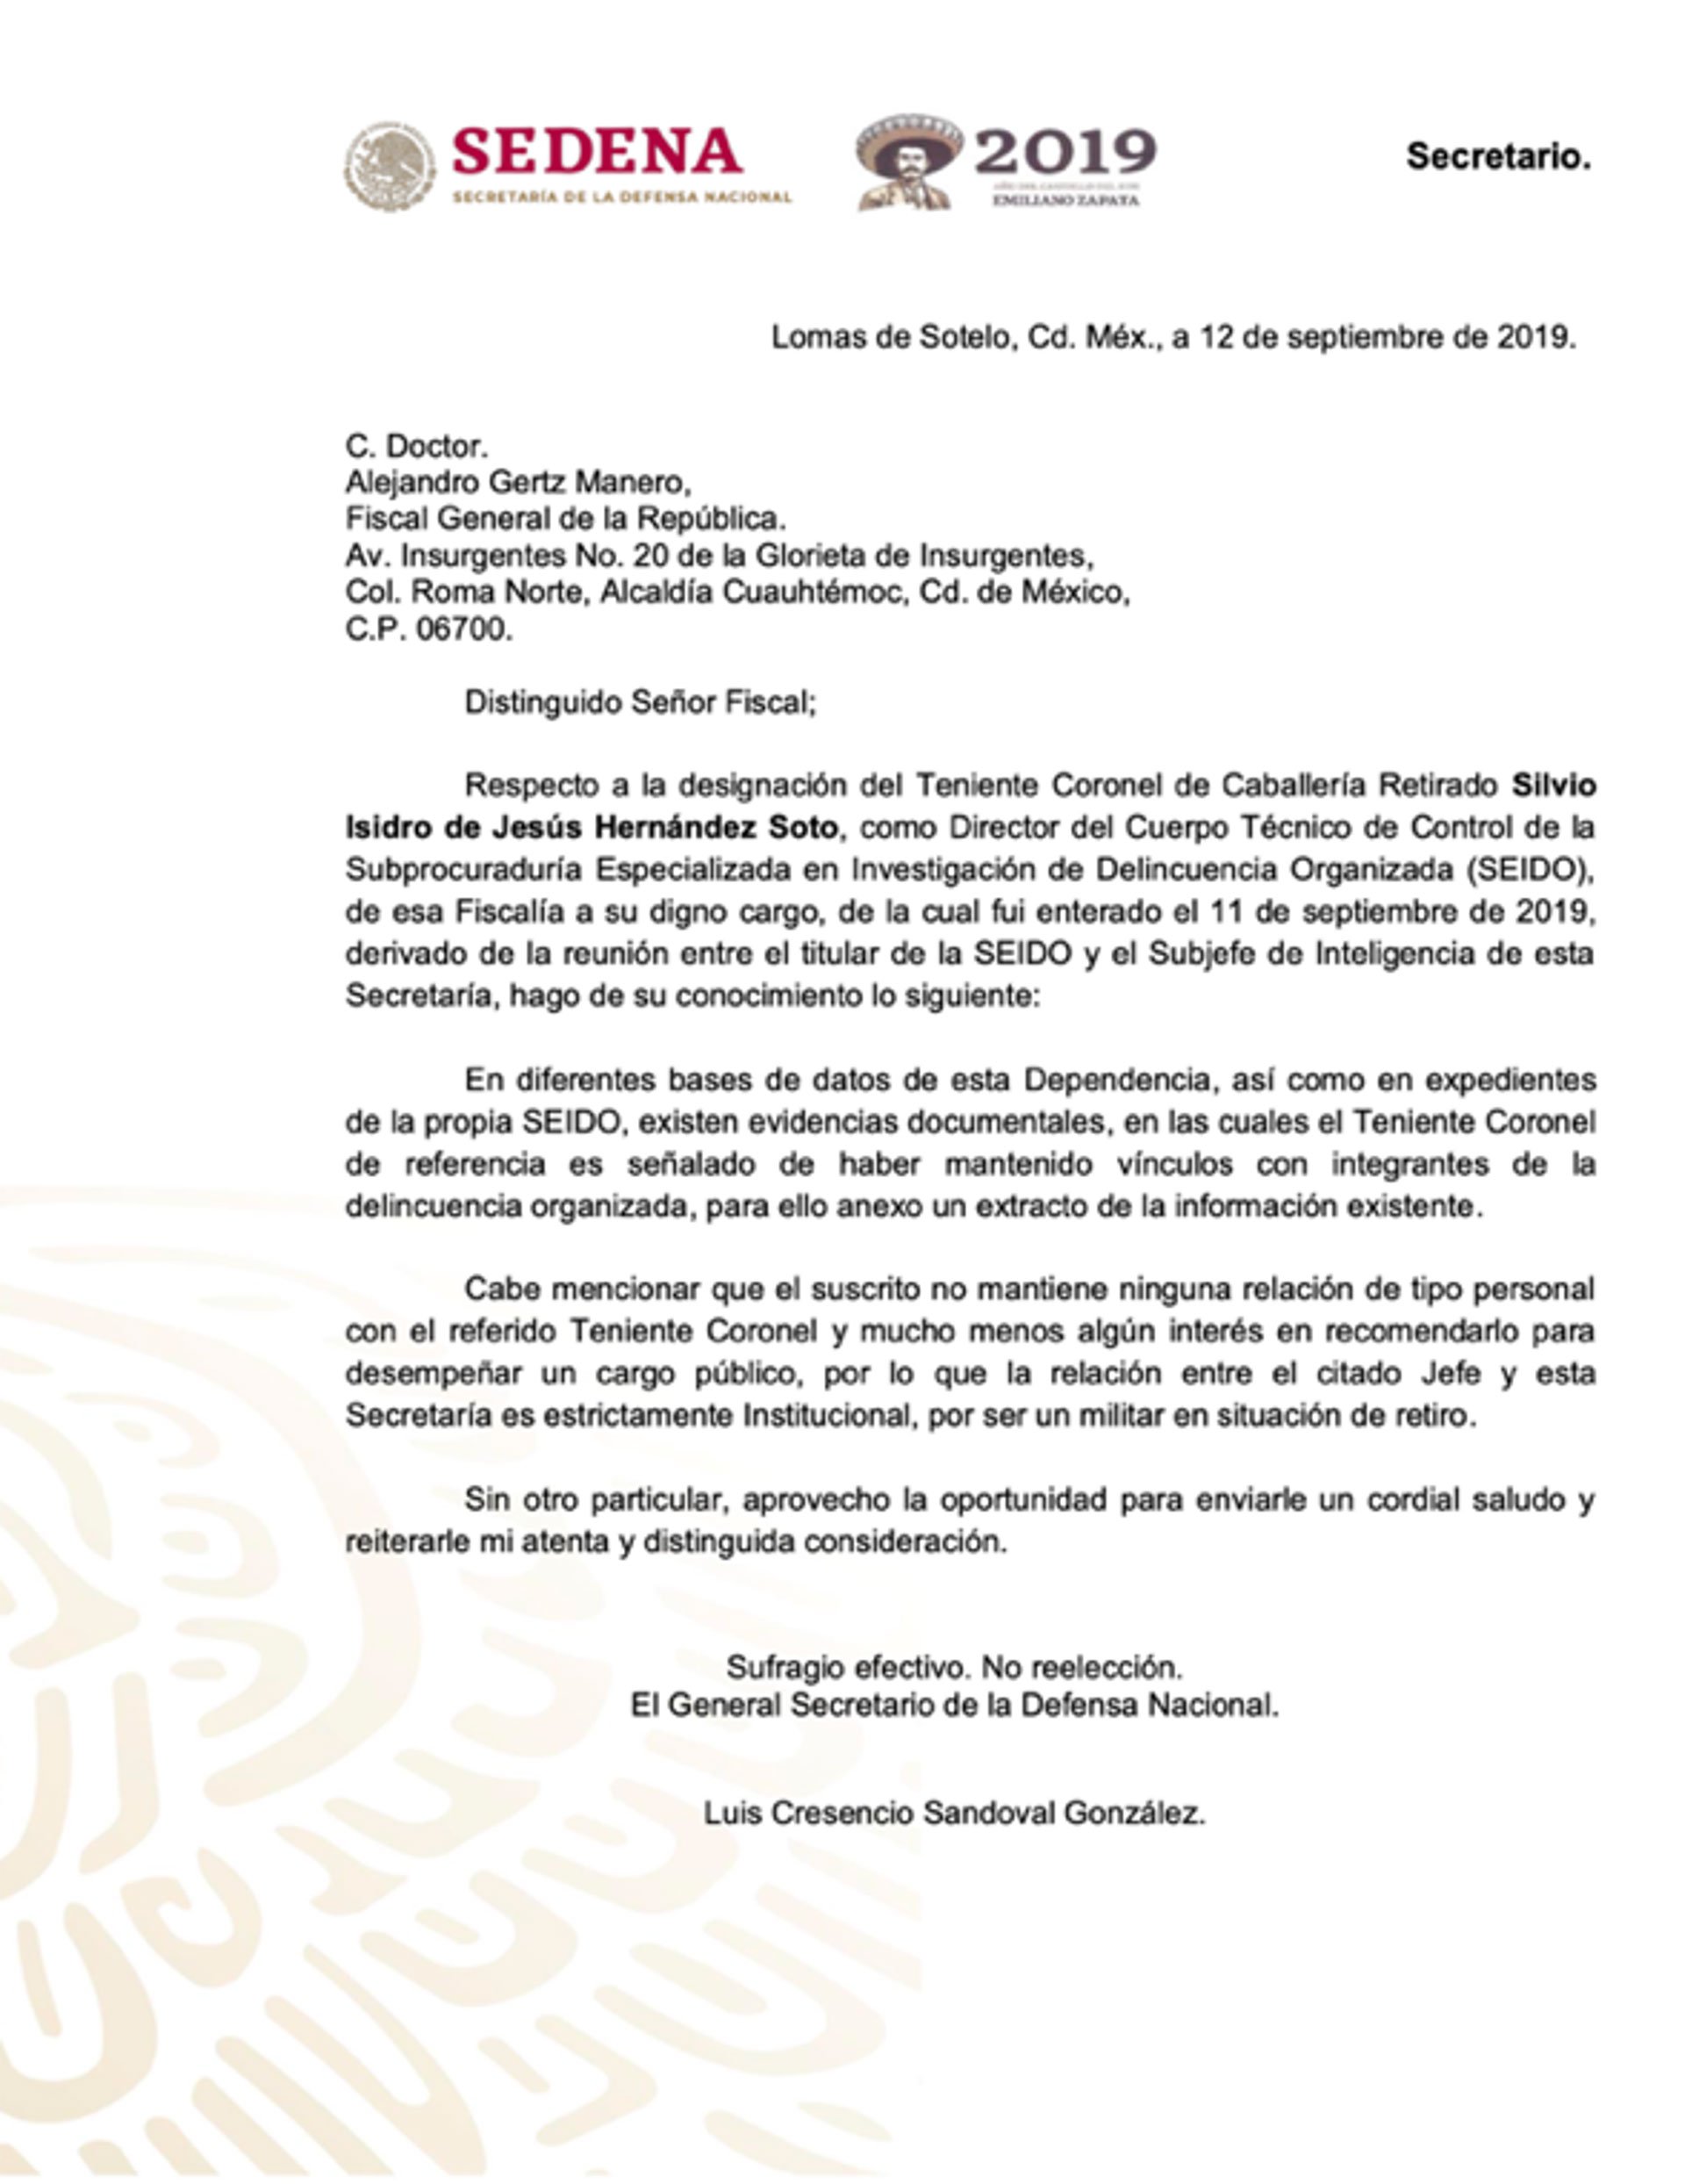 Carta del General Secretario Luis Cresencio Sandoval dirigida al Fiscal General de la República Alejandro Gertz Manero